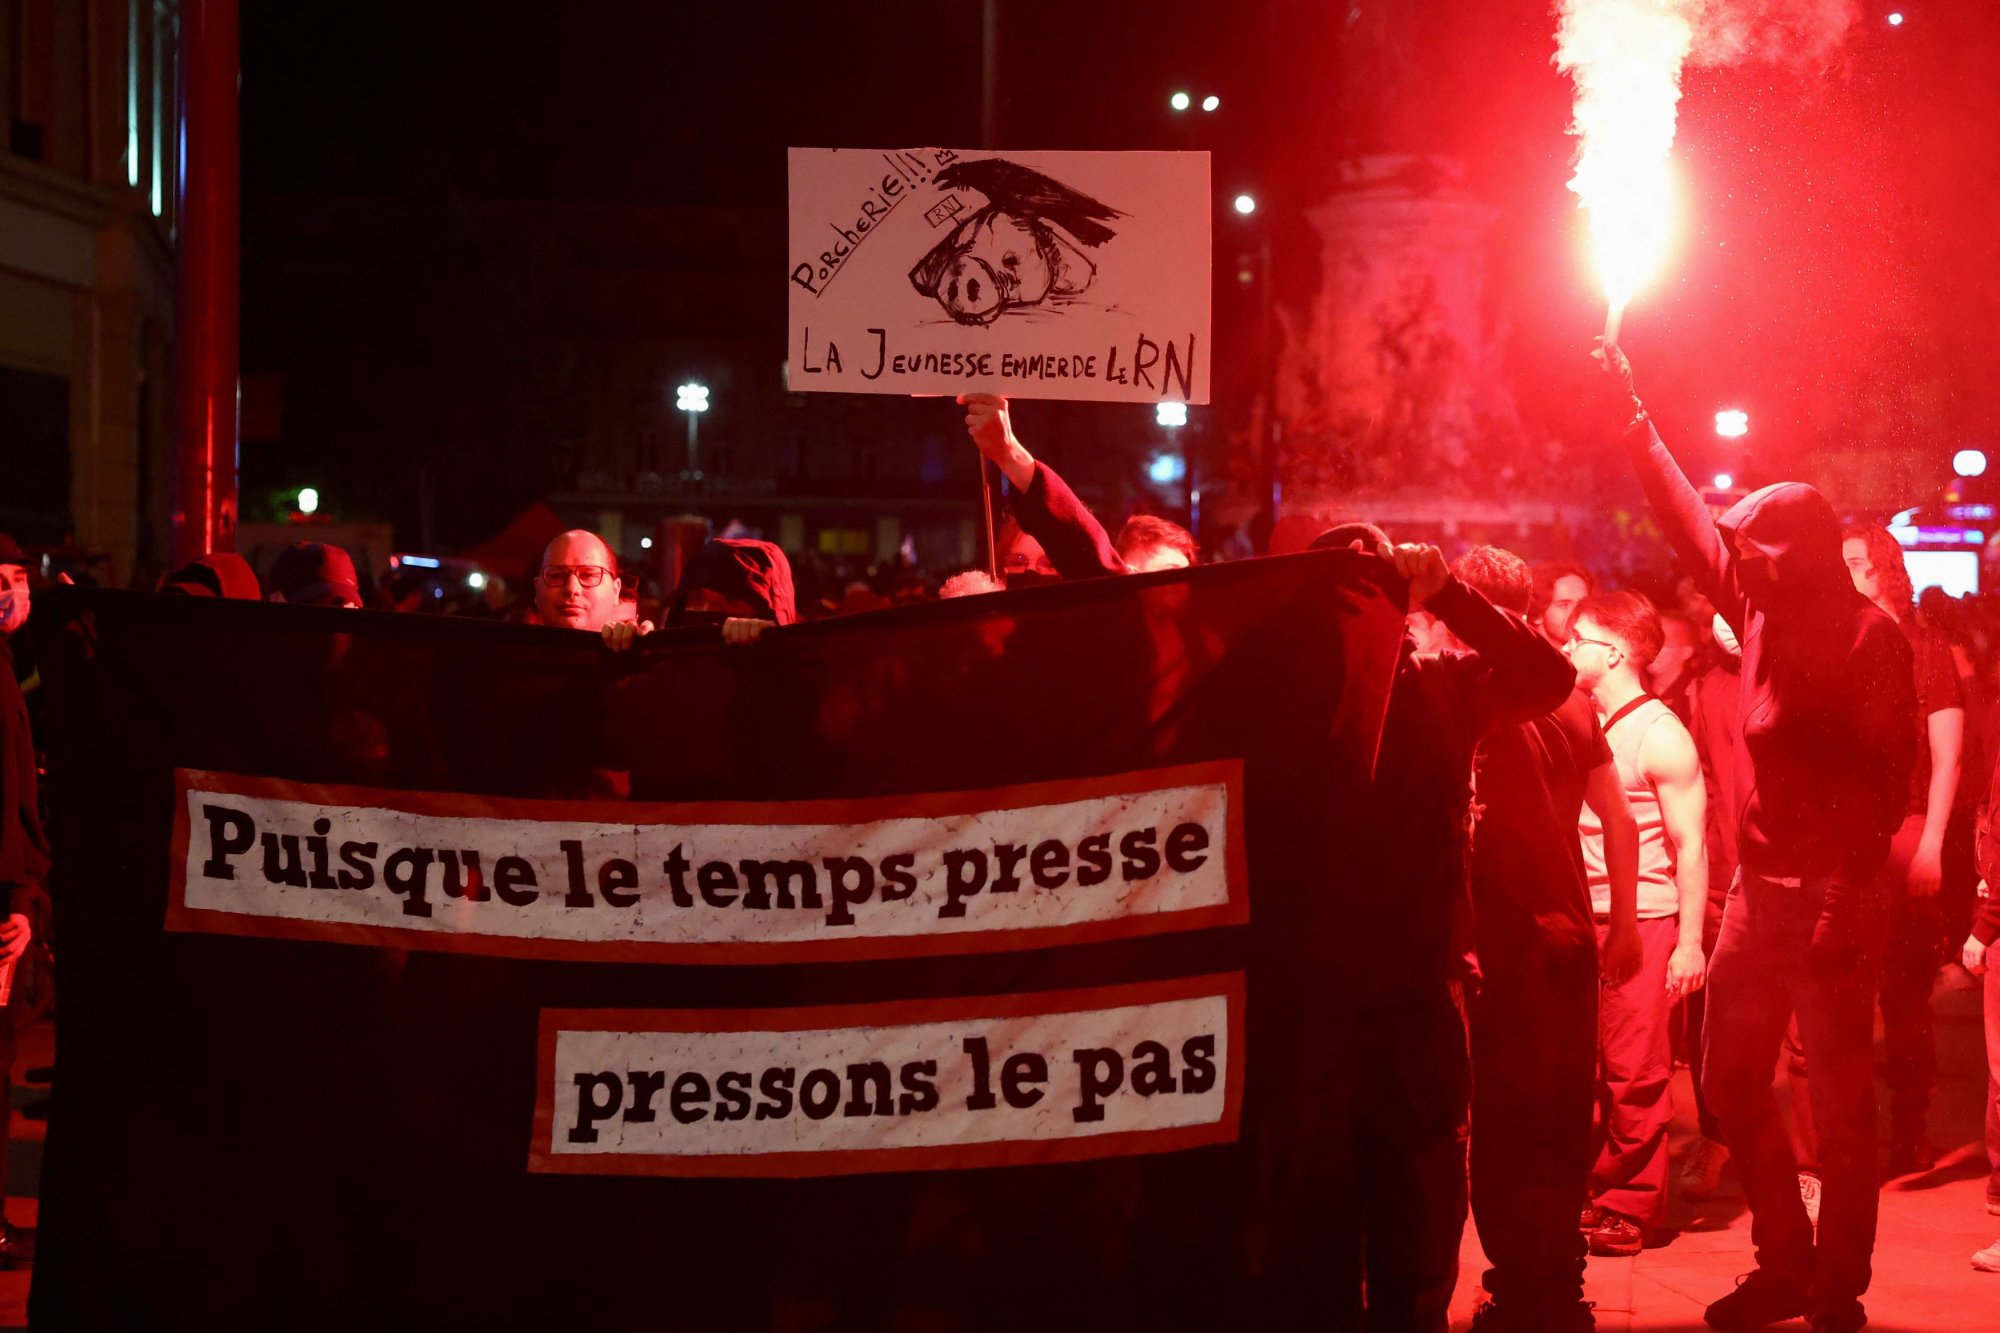 Η ακροδεξιά κερδίζει στη Γαλλία – αλλά οι νέοι στρέφονται προς την αριστερά